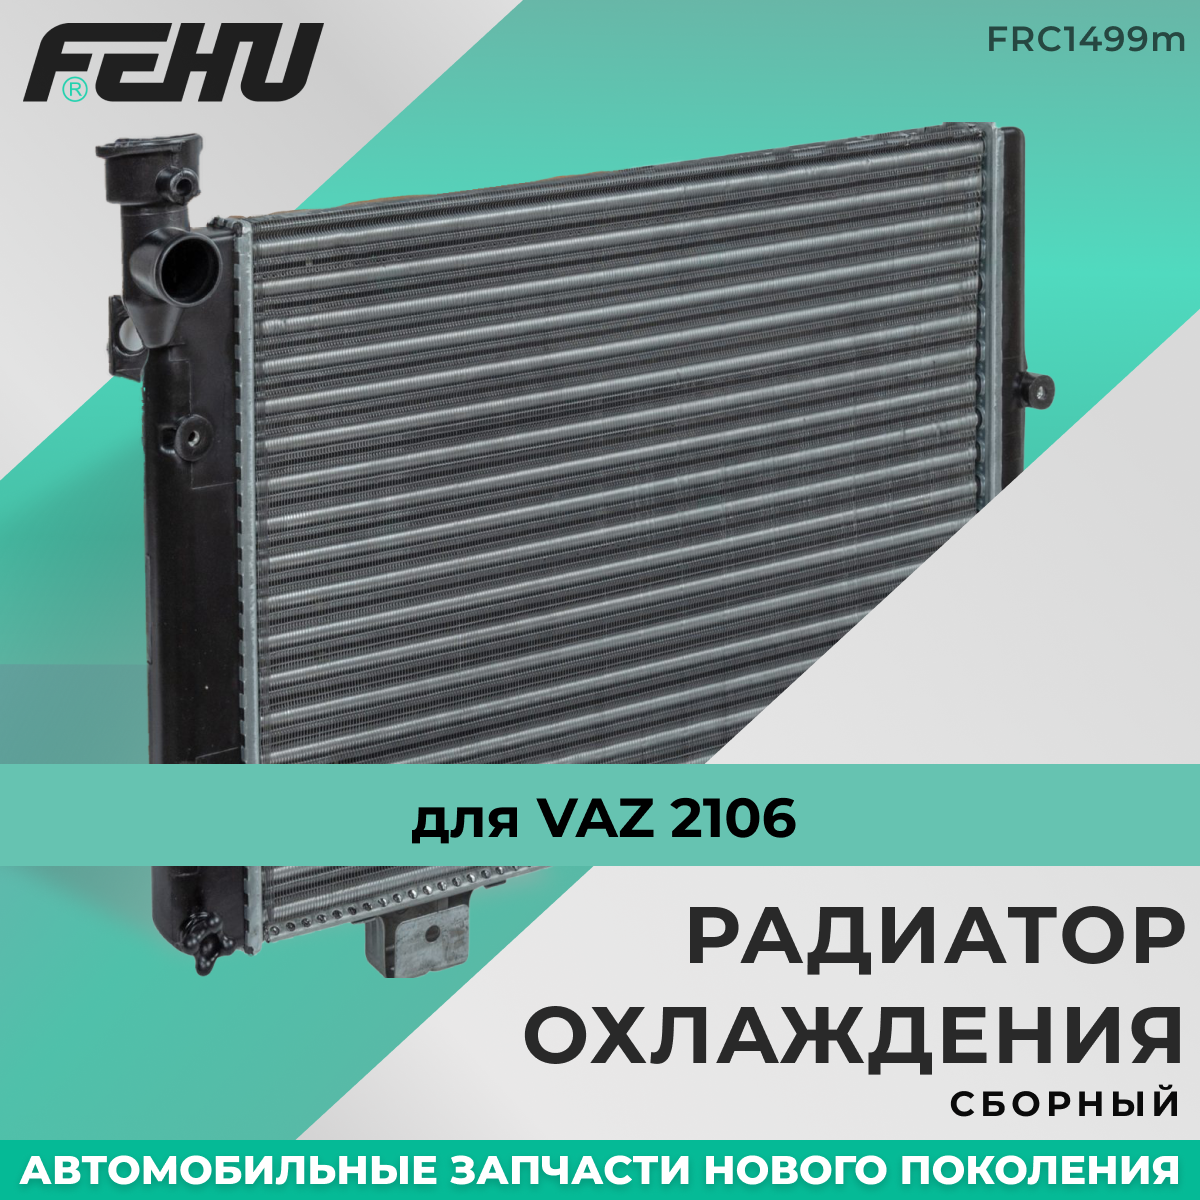 Радиатор охлаждения FEHU (феху) сборный ВАЗ 2105, 2107 арт. 21070130101250